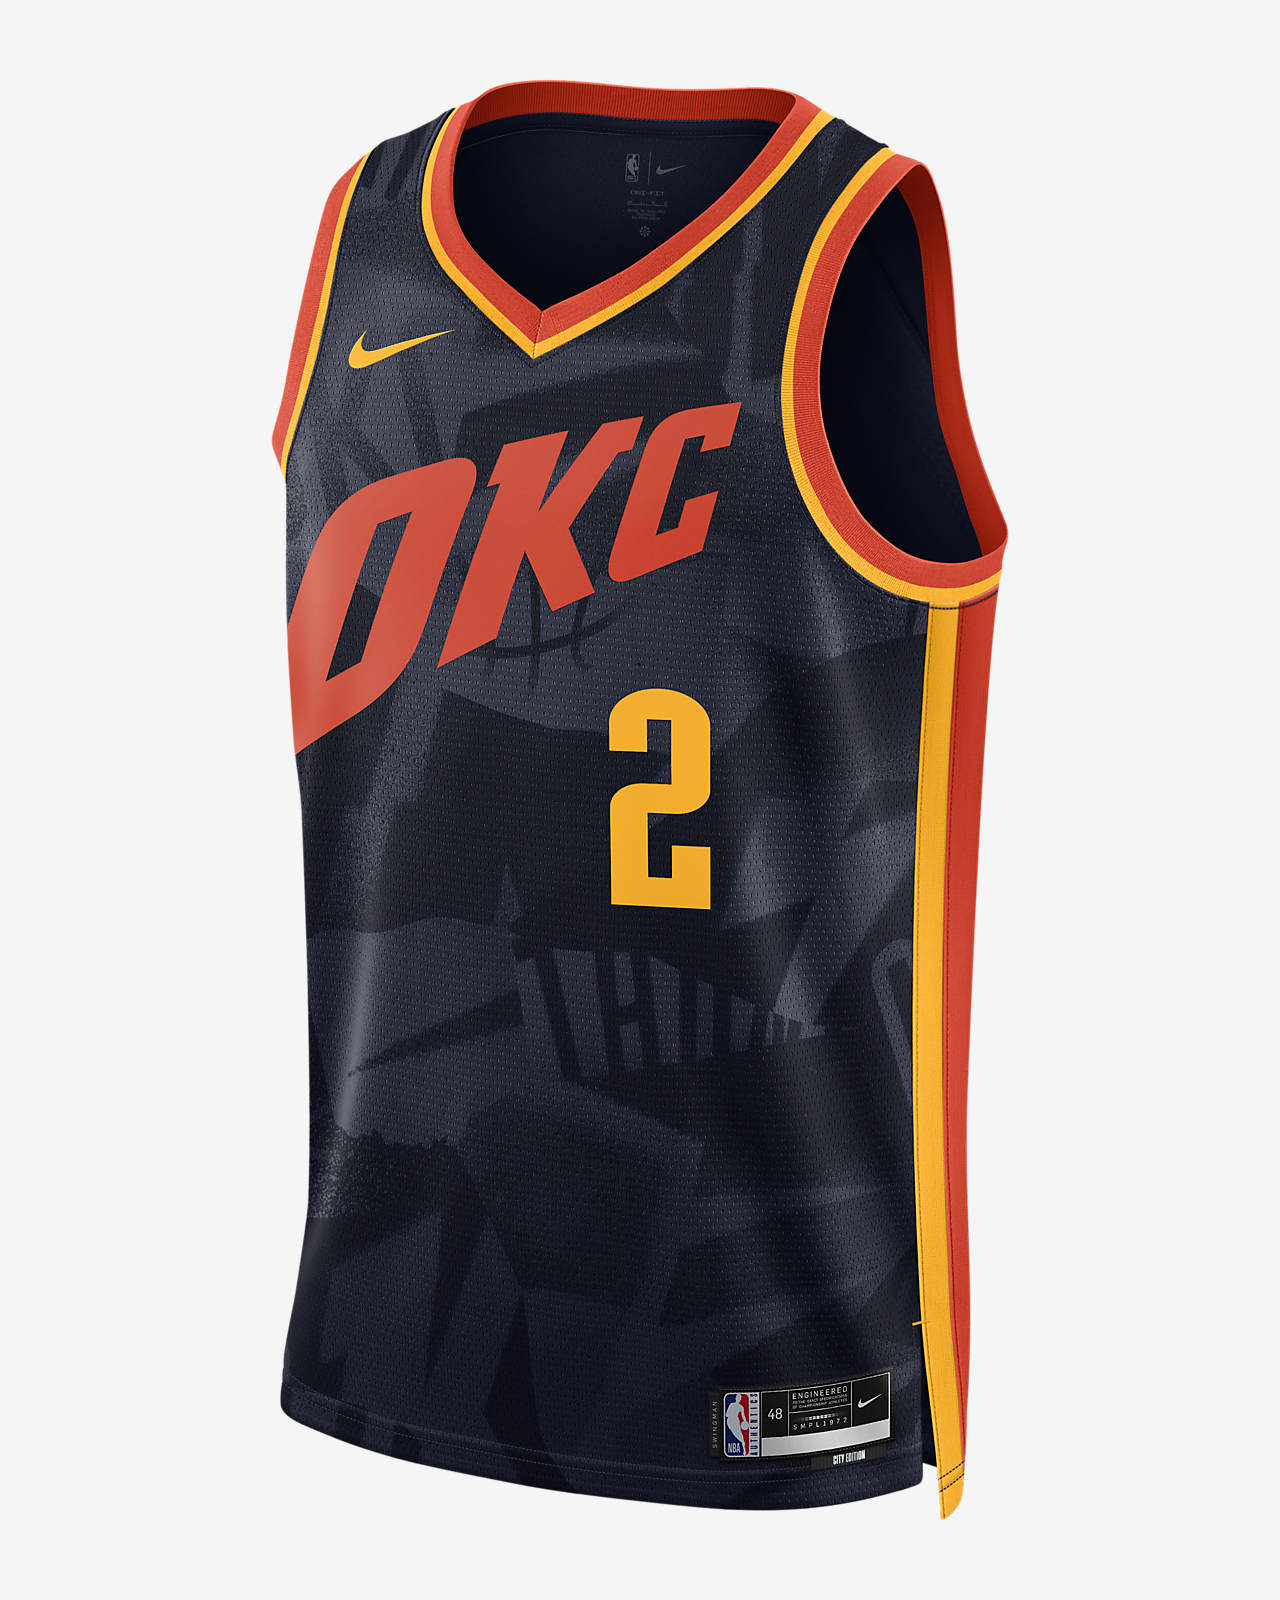 2023/24 赛季俄克拉荷马城雷霆队 (Shai Gilgeous-Alexander) City Edition Nike Dri-FIT NBA Swingman Jersey 男子速干球衣